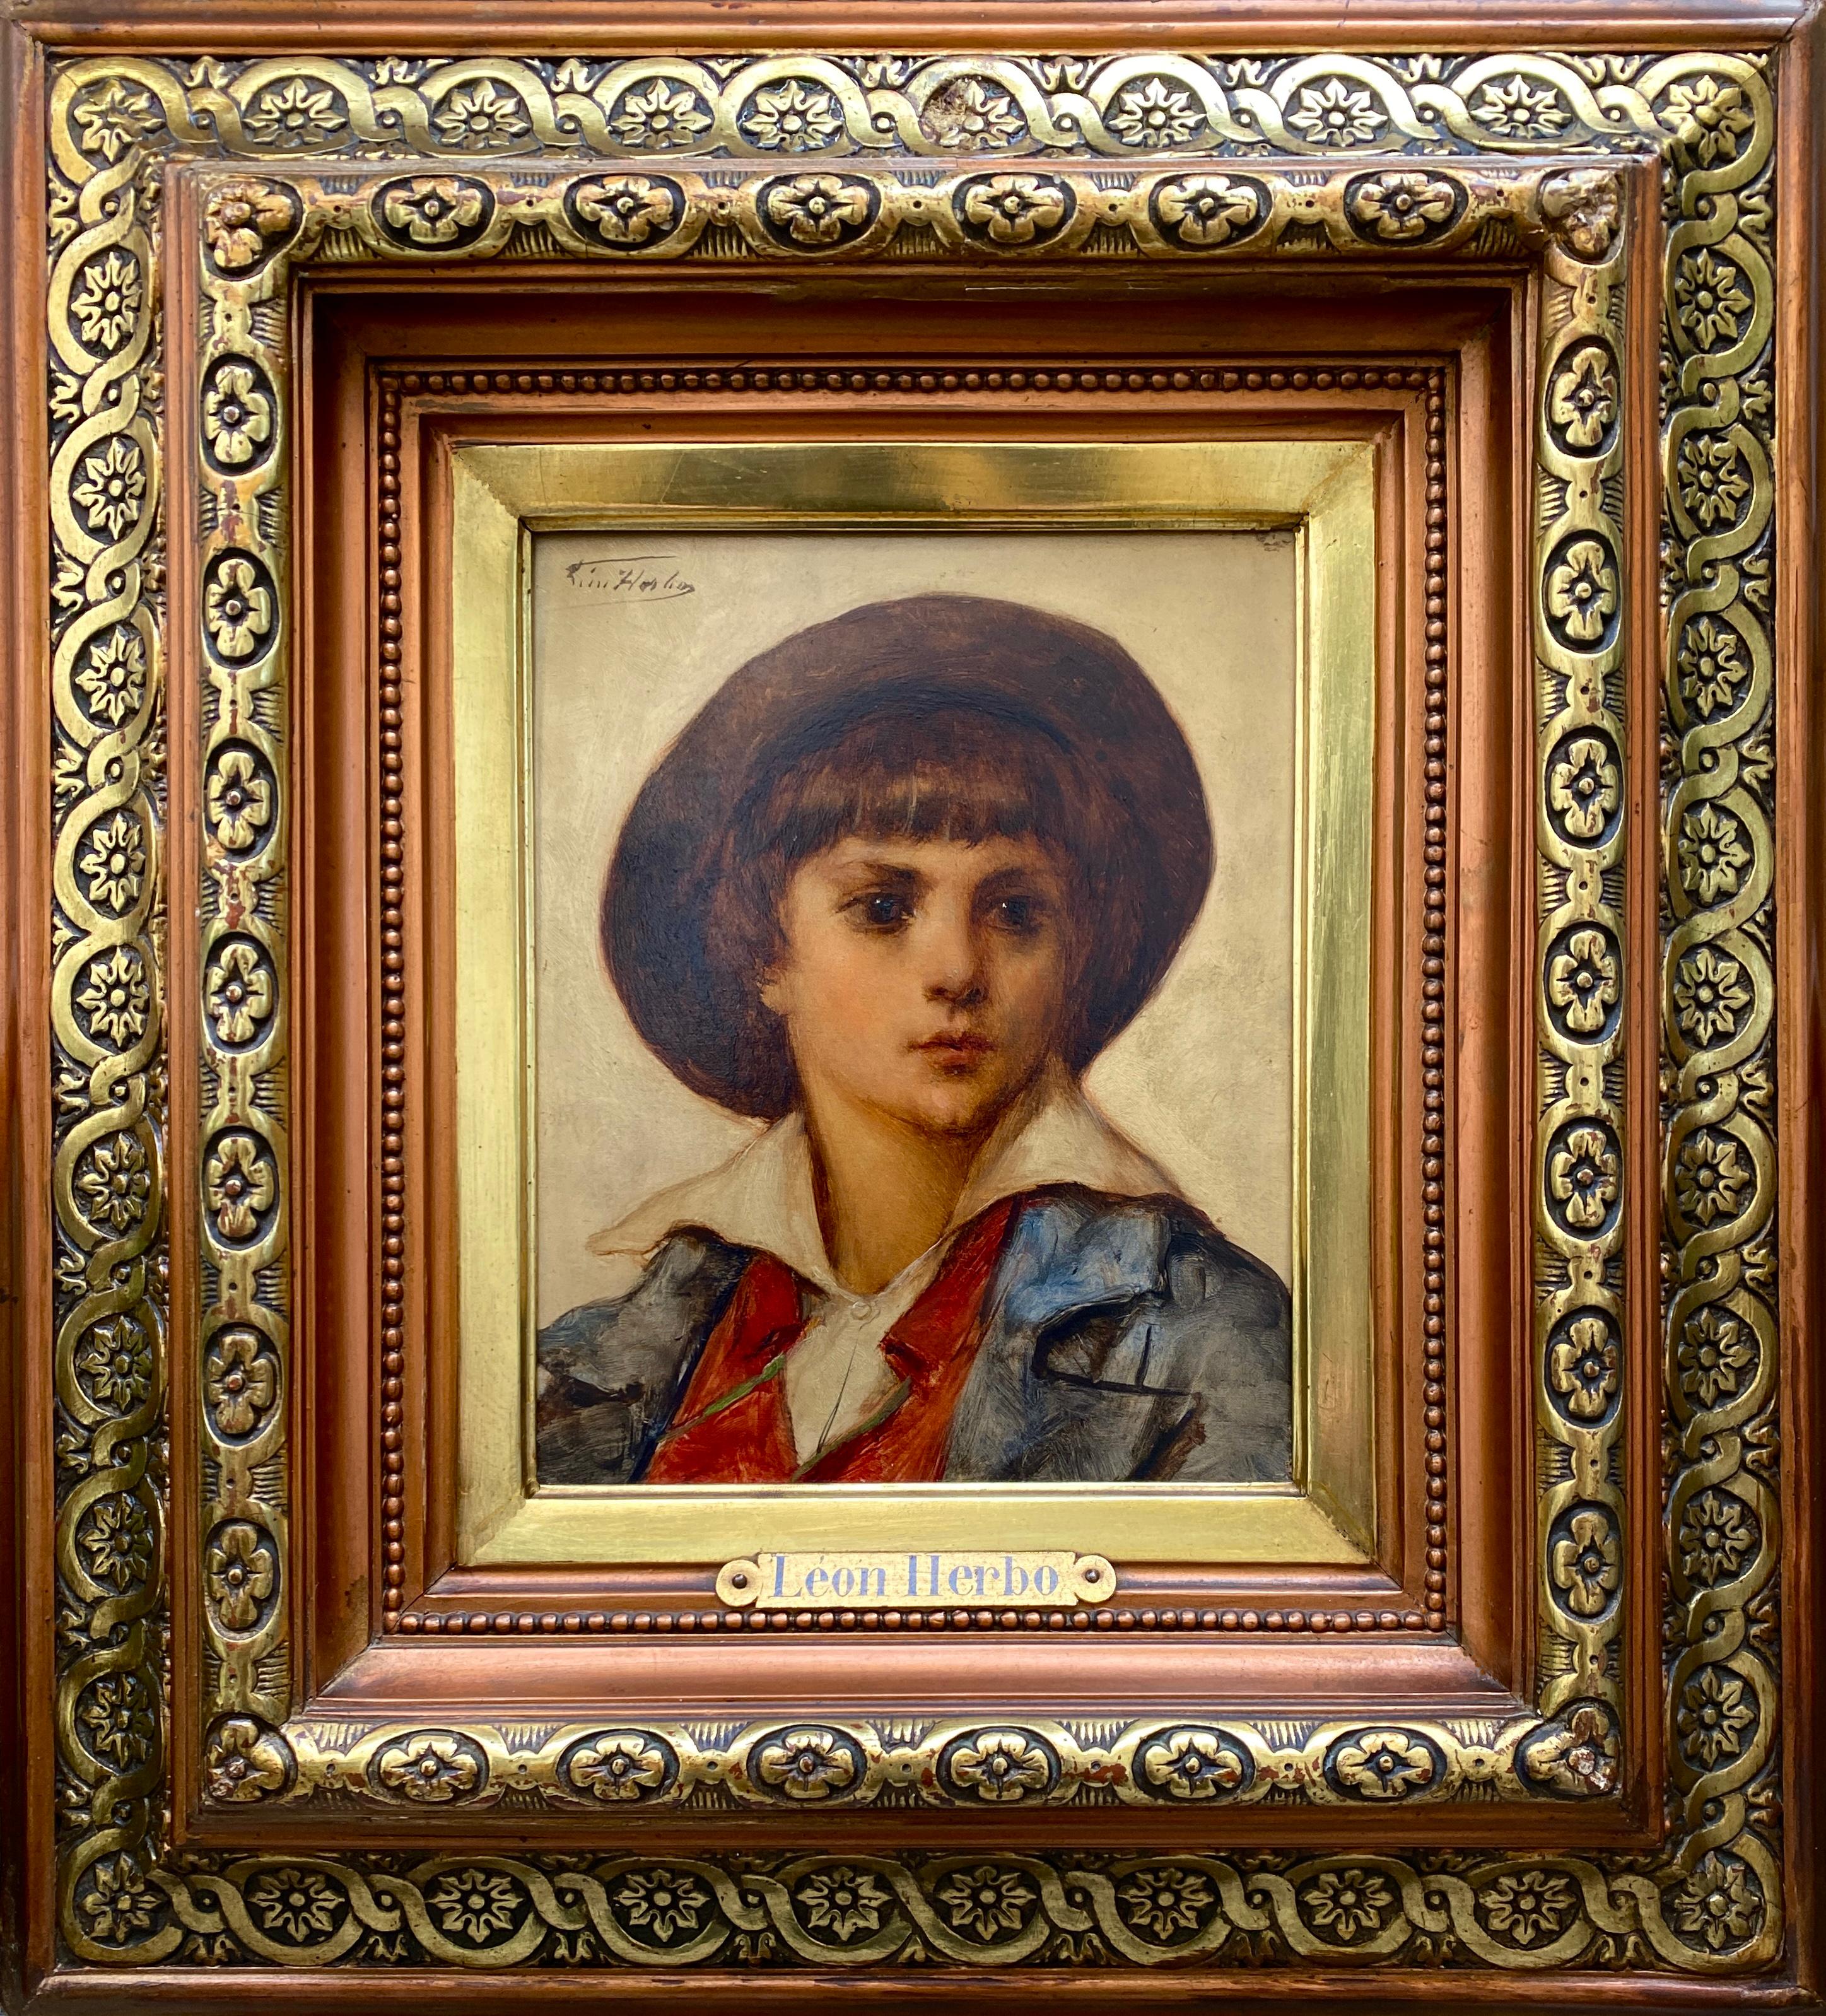 Leon Herbo Portrait Painting - Léon Herbo, Templeuve 1850 – 1907 Ixelles, Belgian Painter, 'Portrait of a Boy'